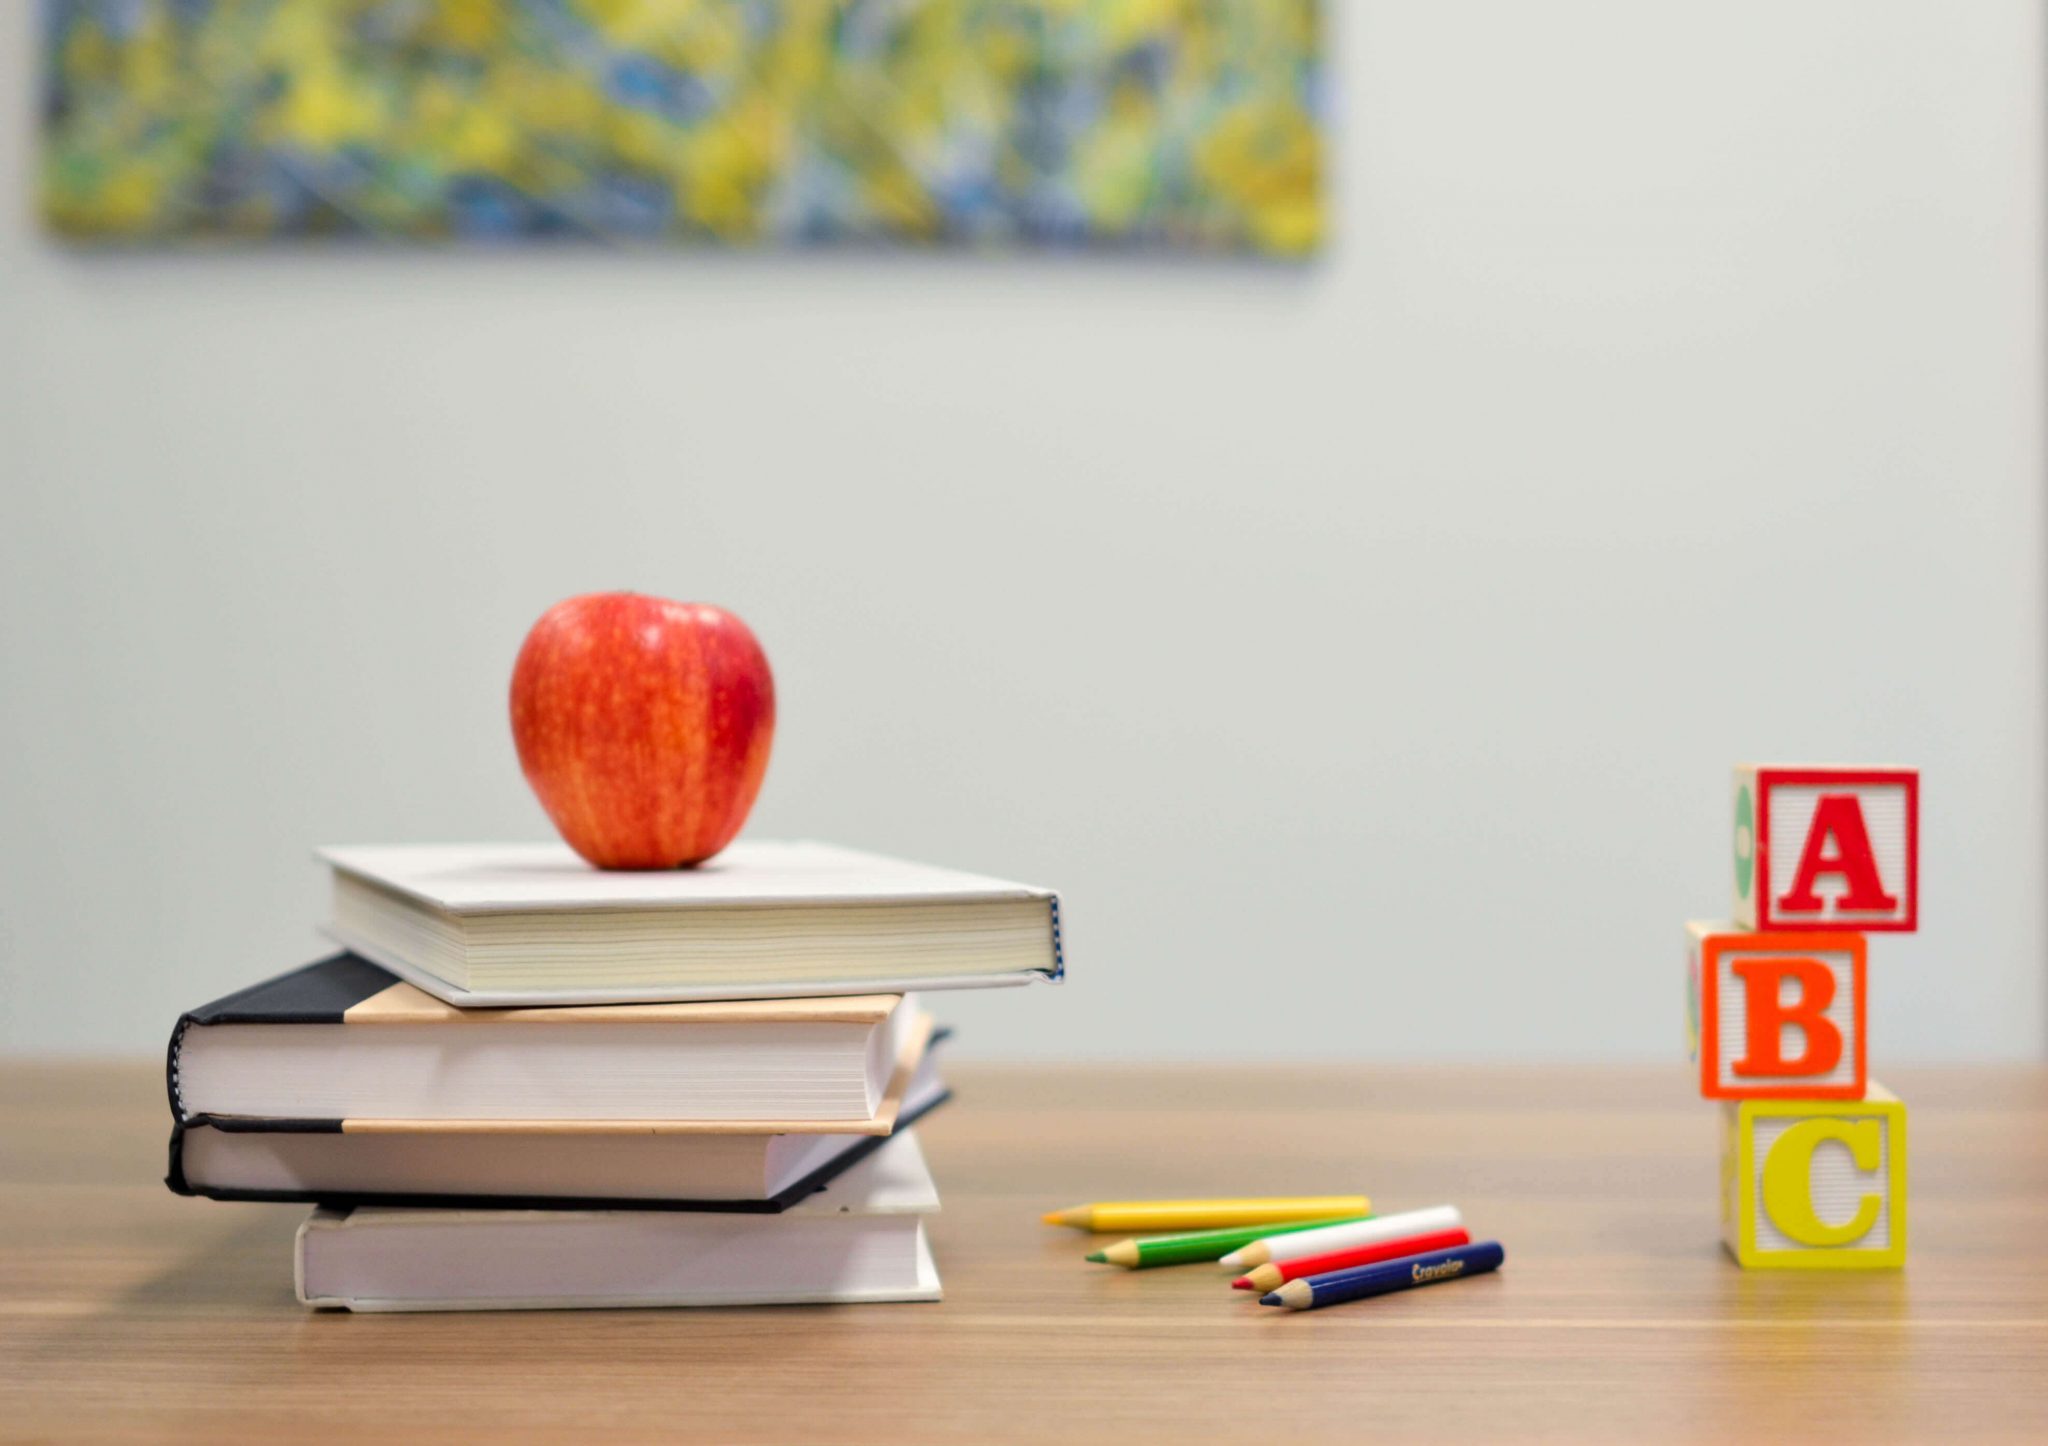 Bücher, Stifte, Buchstaben und ein Apfel liegen auf einem Schreibtisch